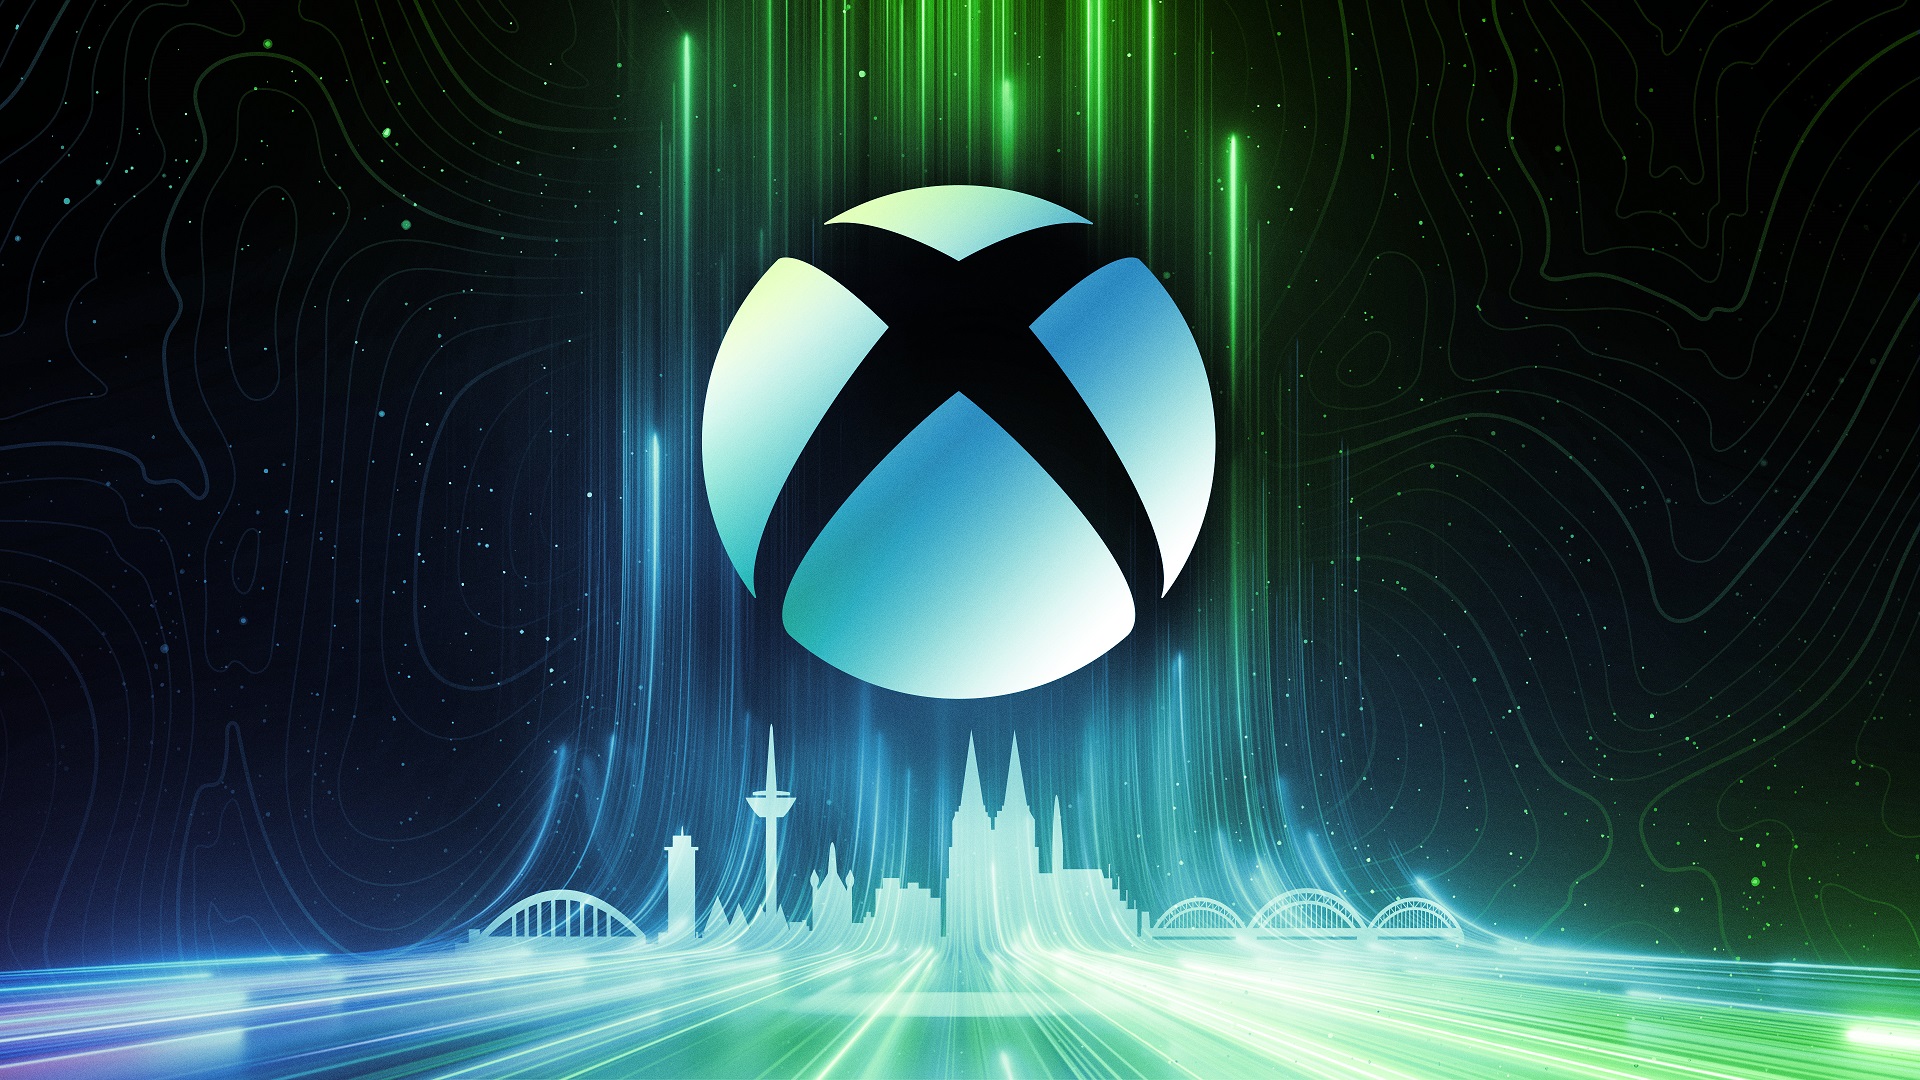 Party Animals chegando ao Xbox Game Pass em 2022 - Xbox Wire em Português